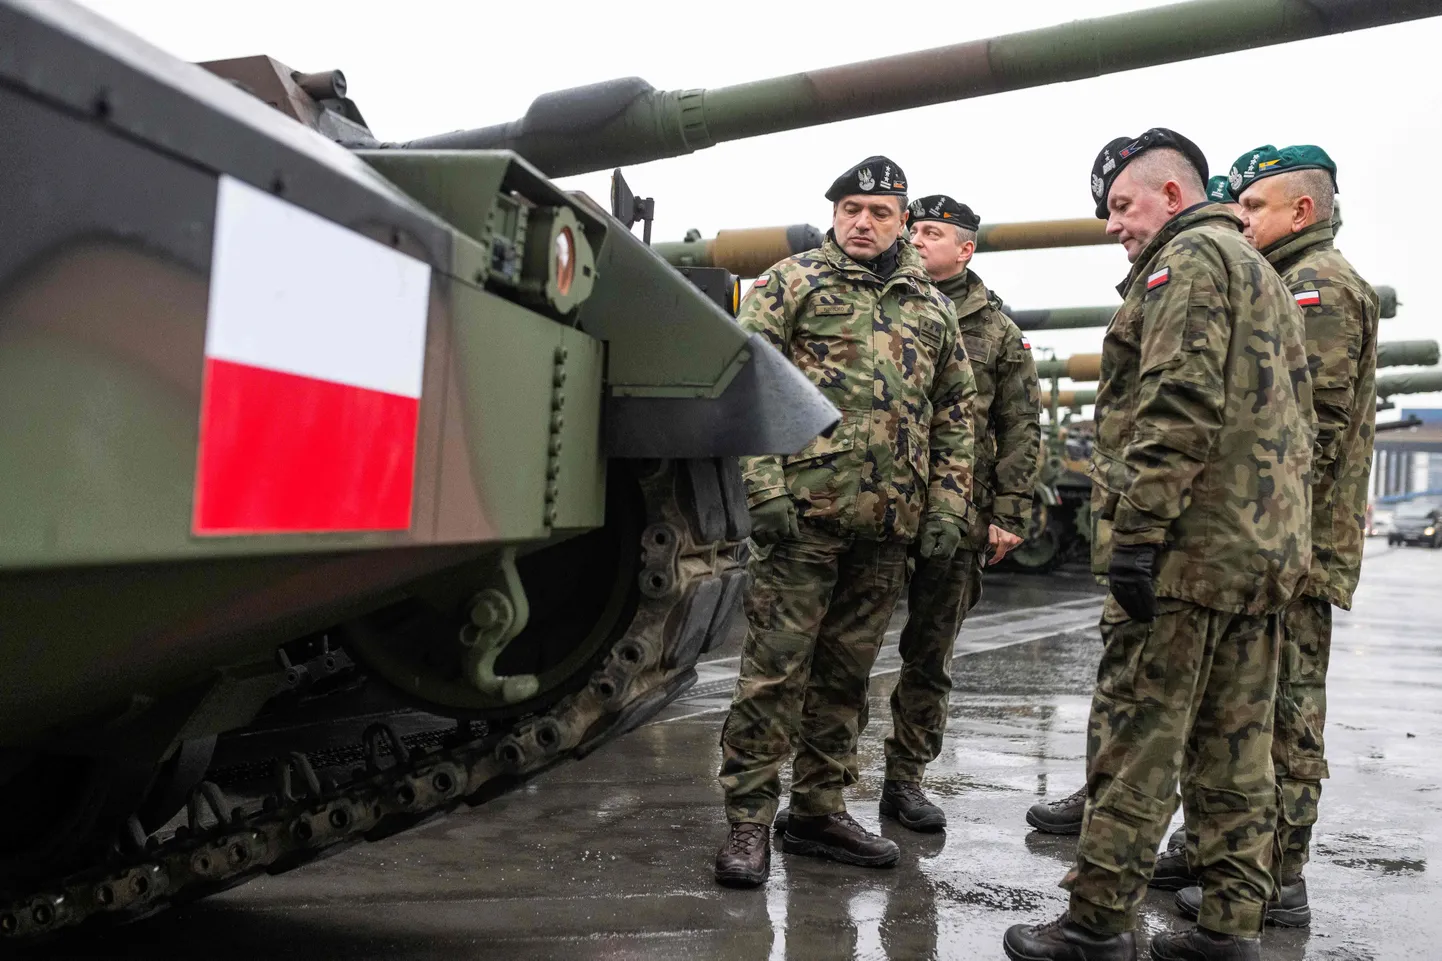 Poola armee sõdurid seisavad sadamas tankide kõrval pärast esimeste K2 tankide ja K9 haubitsate saabumist Poola detsembris.